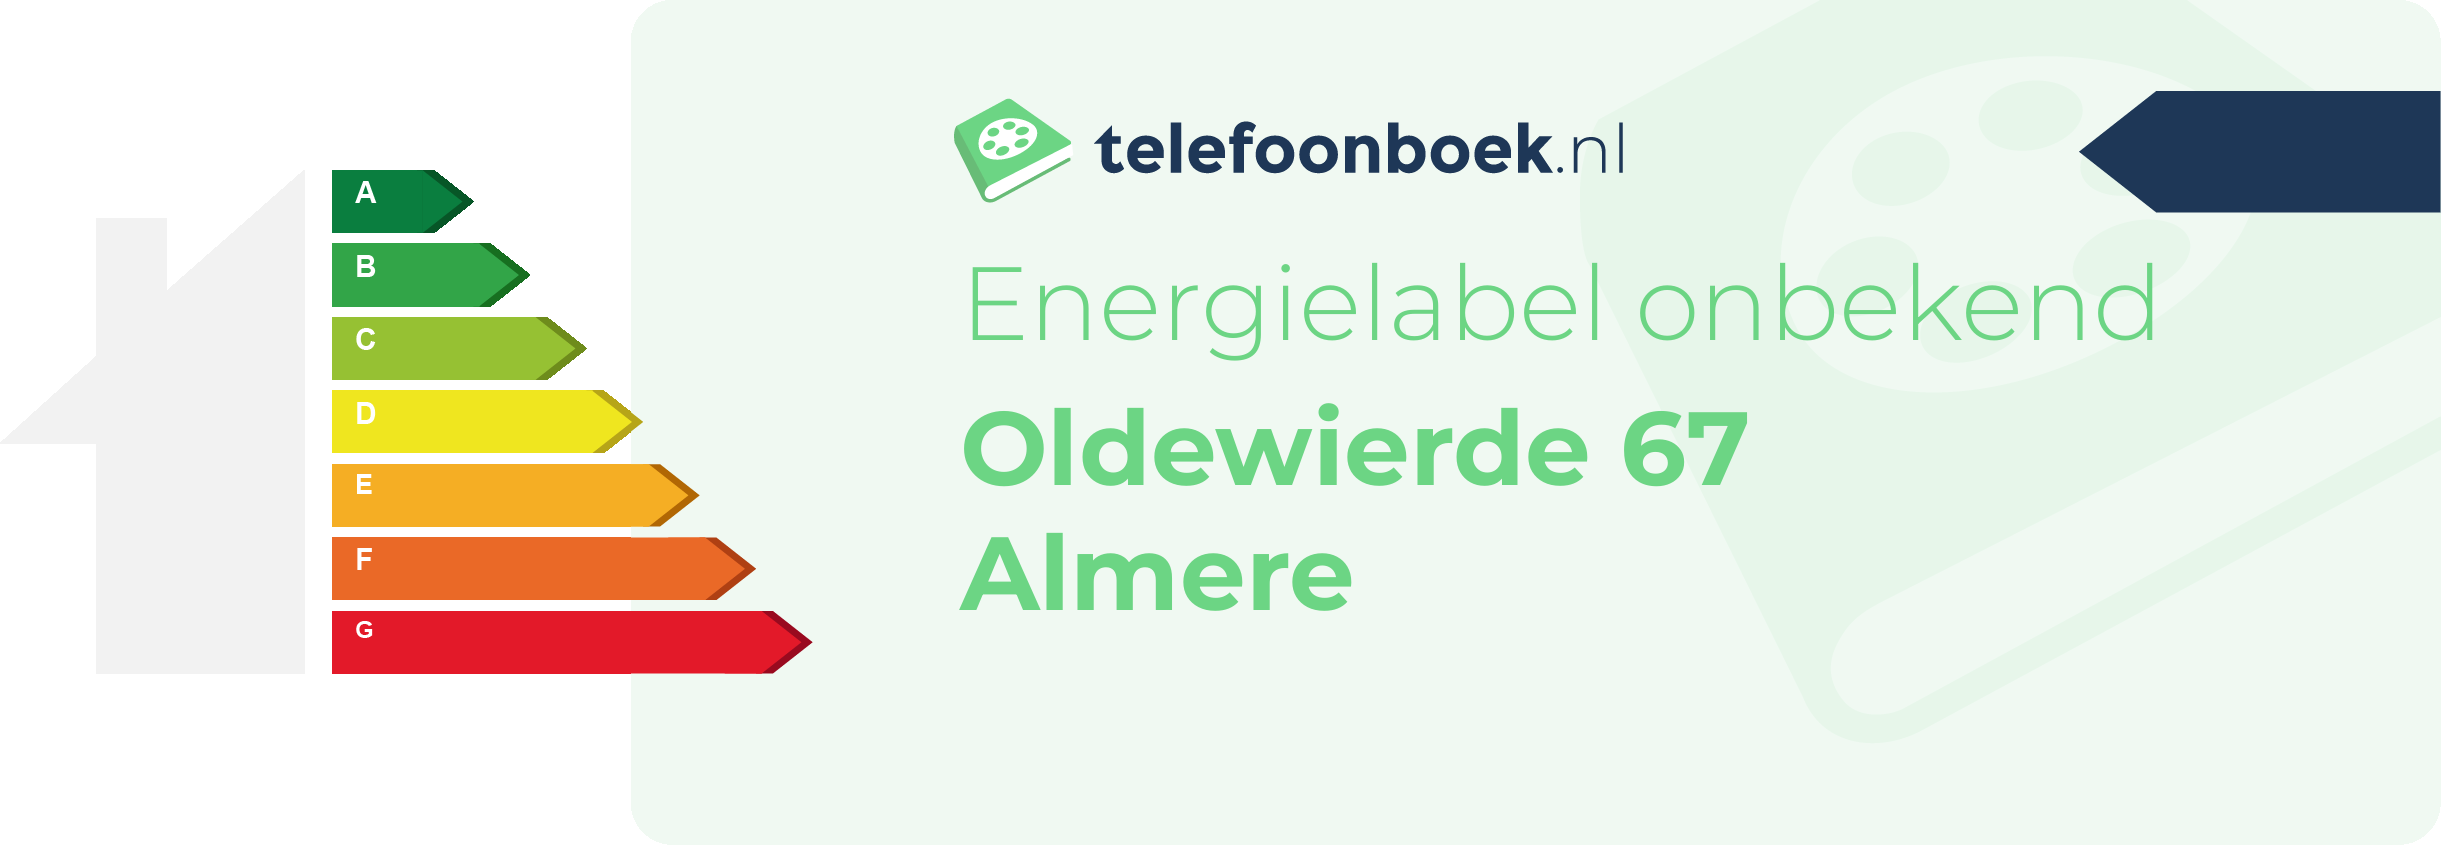 Energielabel Oldewierde 67 Almere